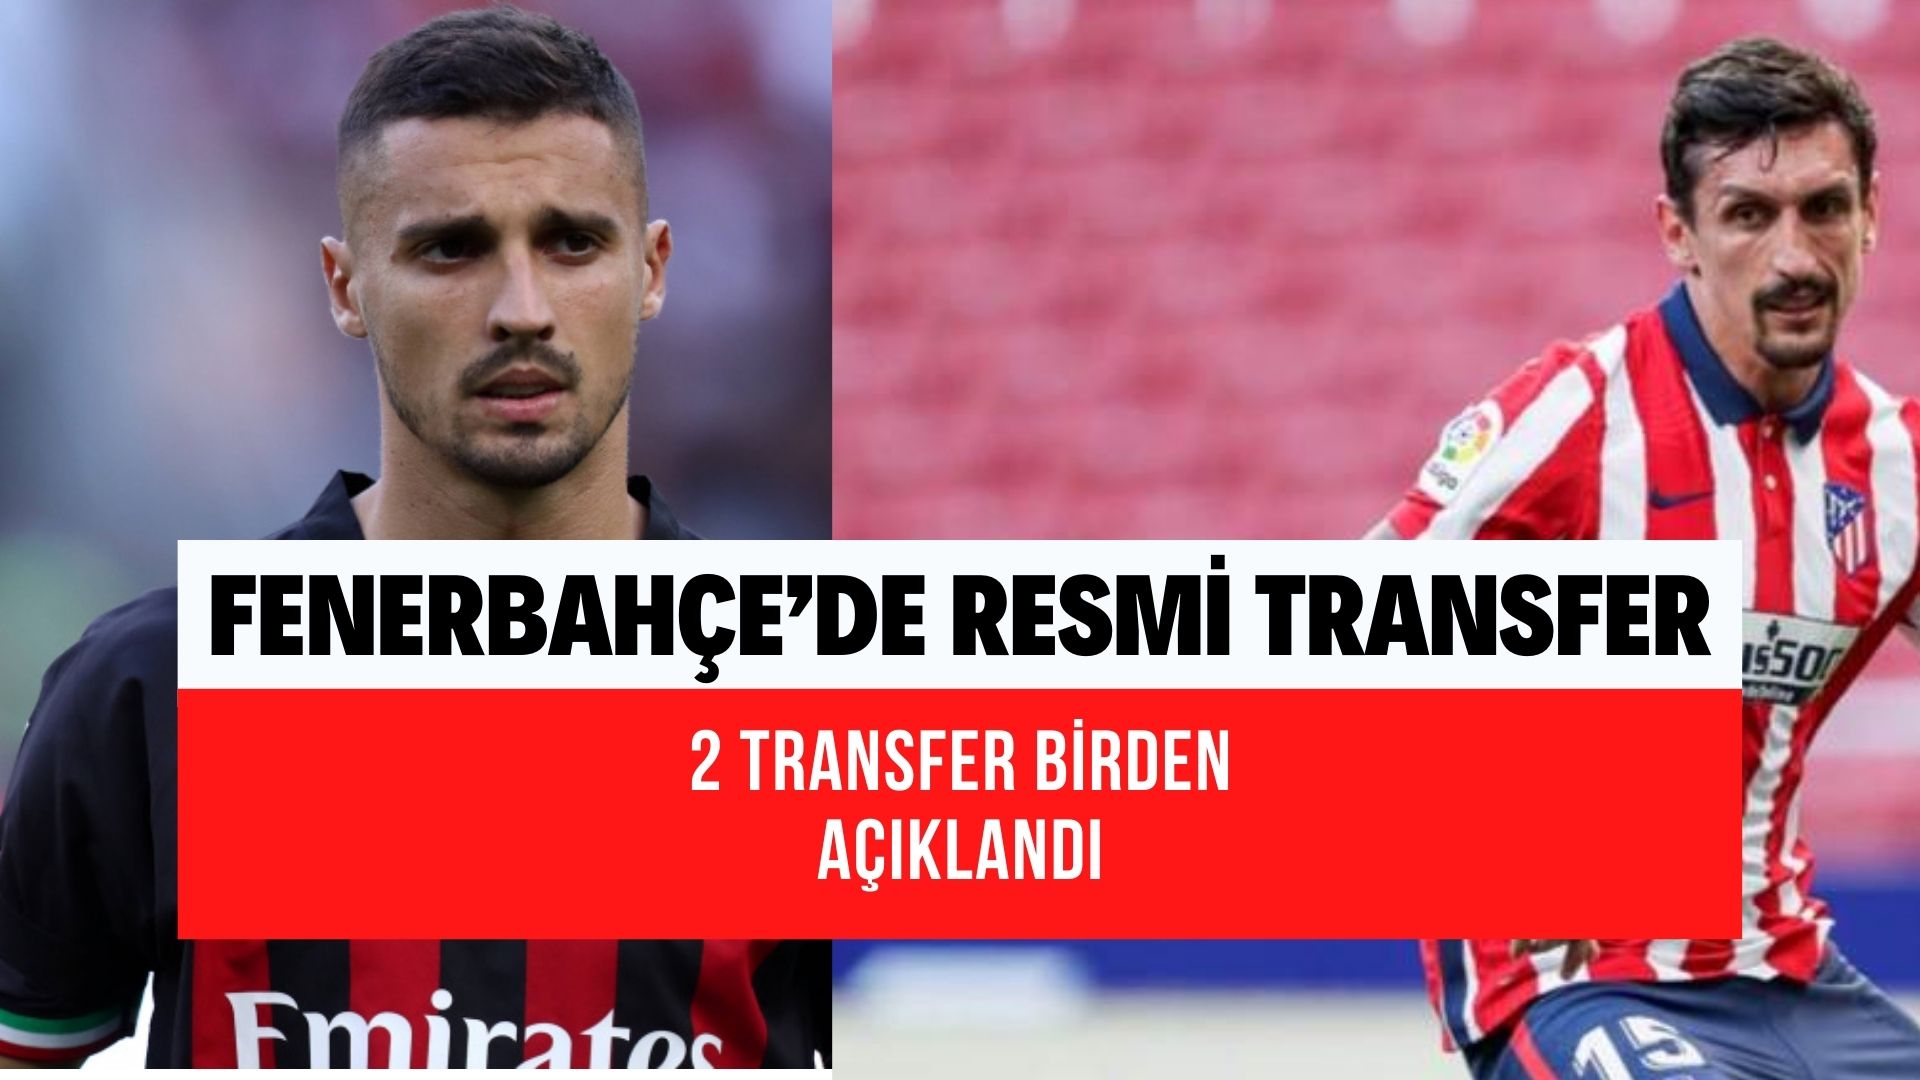 Fenerbahçe’de resmi transfer 2 imzayı birden attırdı! Rade Krunic yanında stoperde imzayı attı!